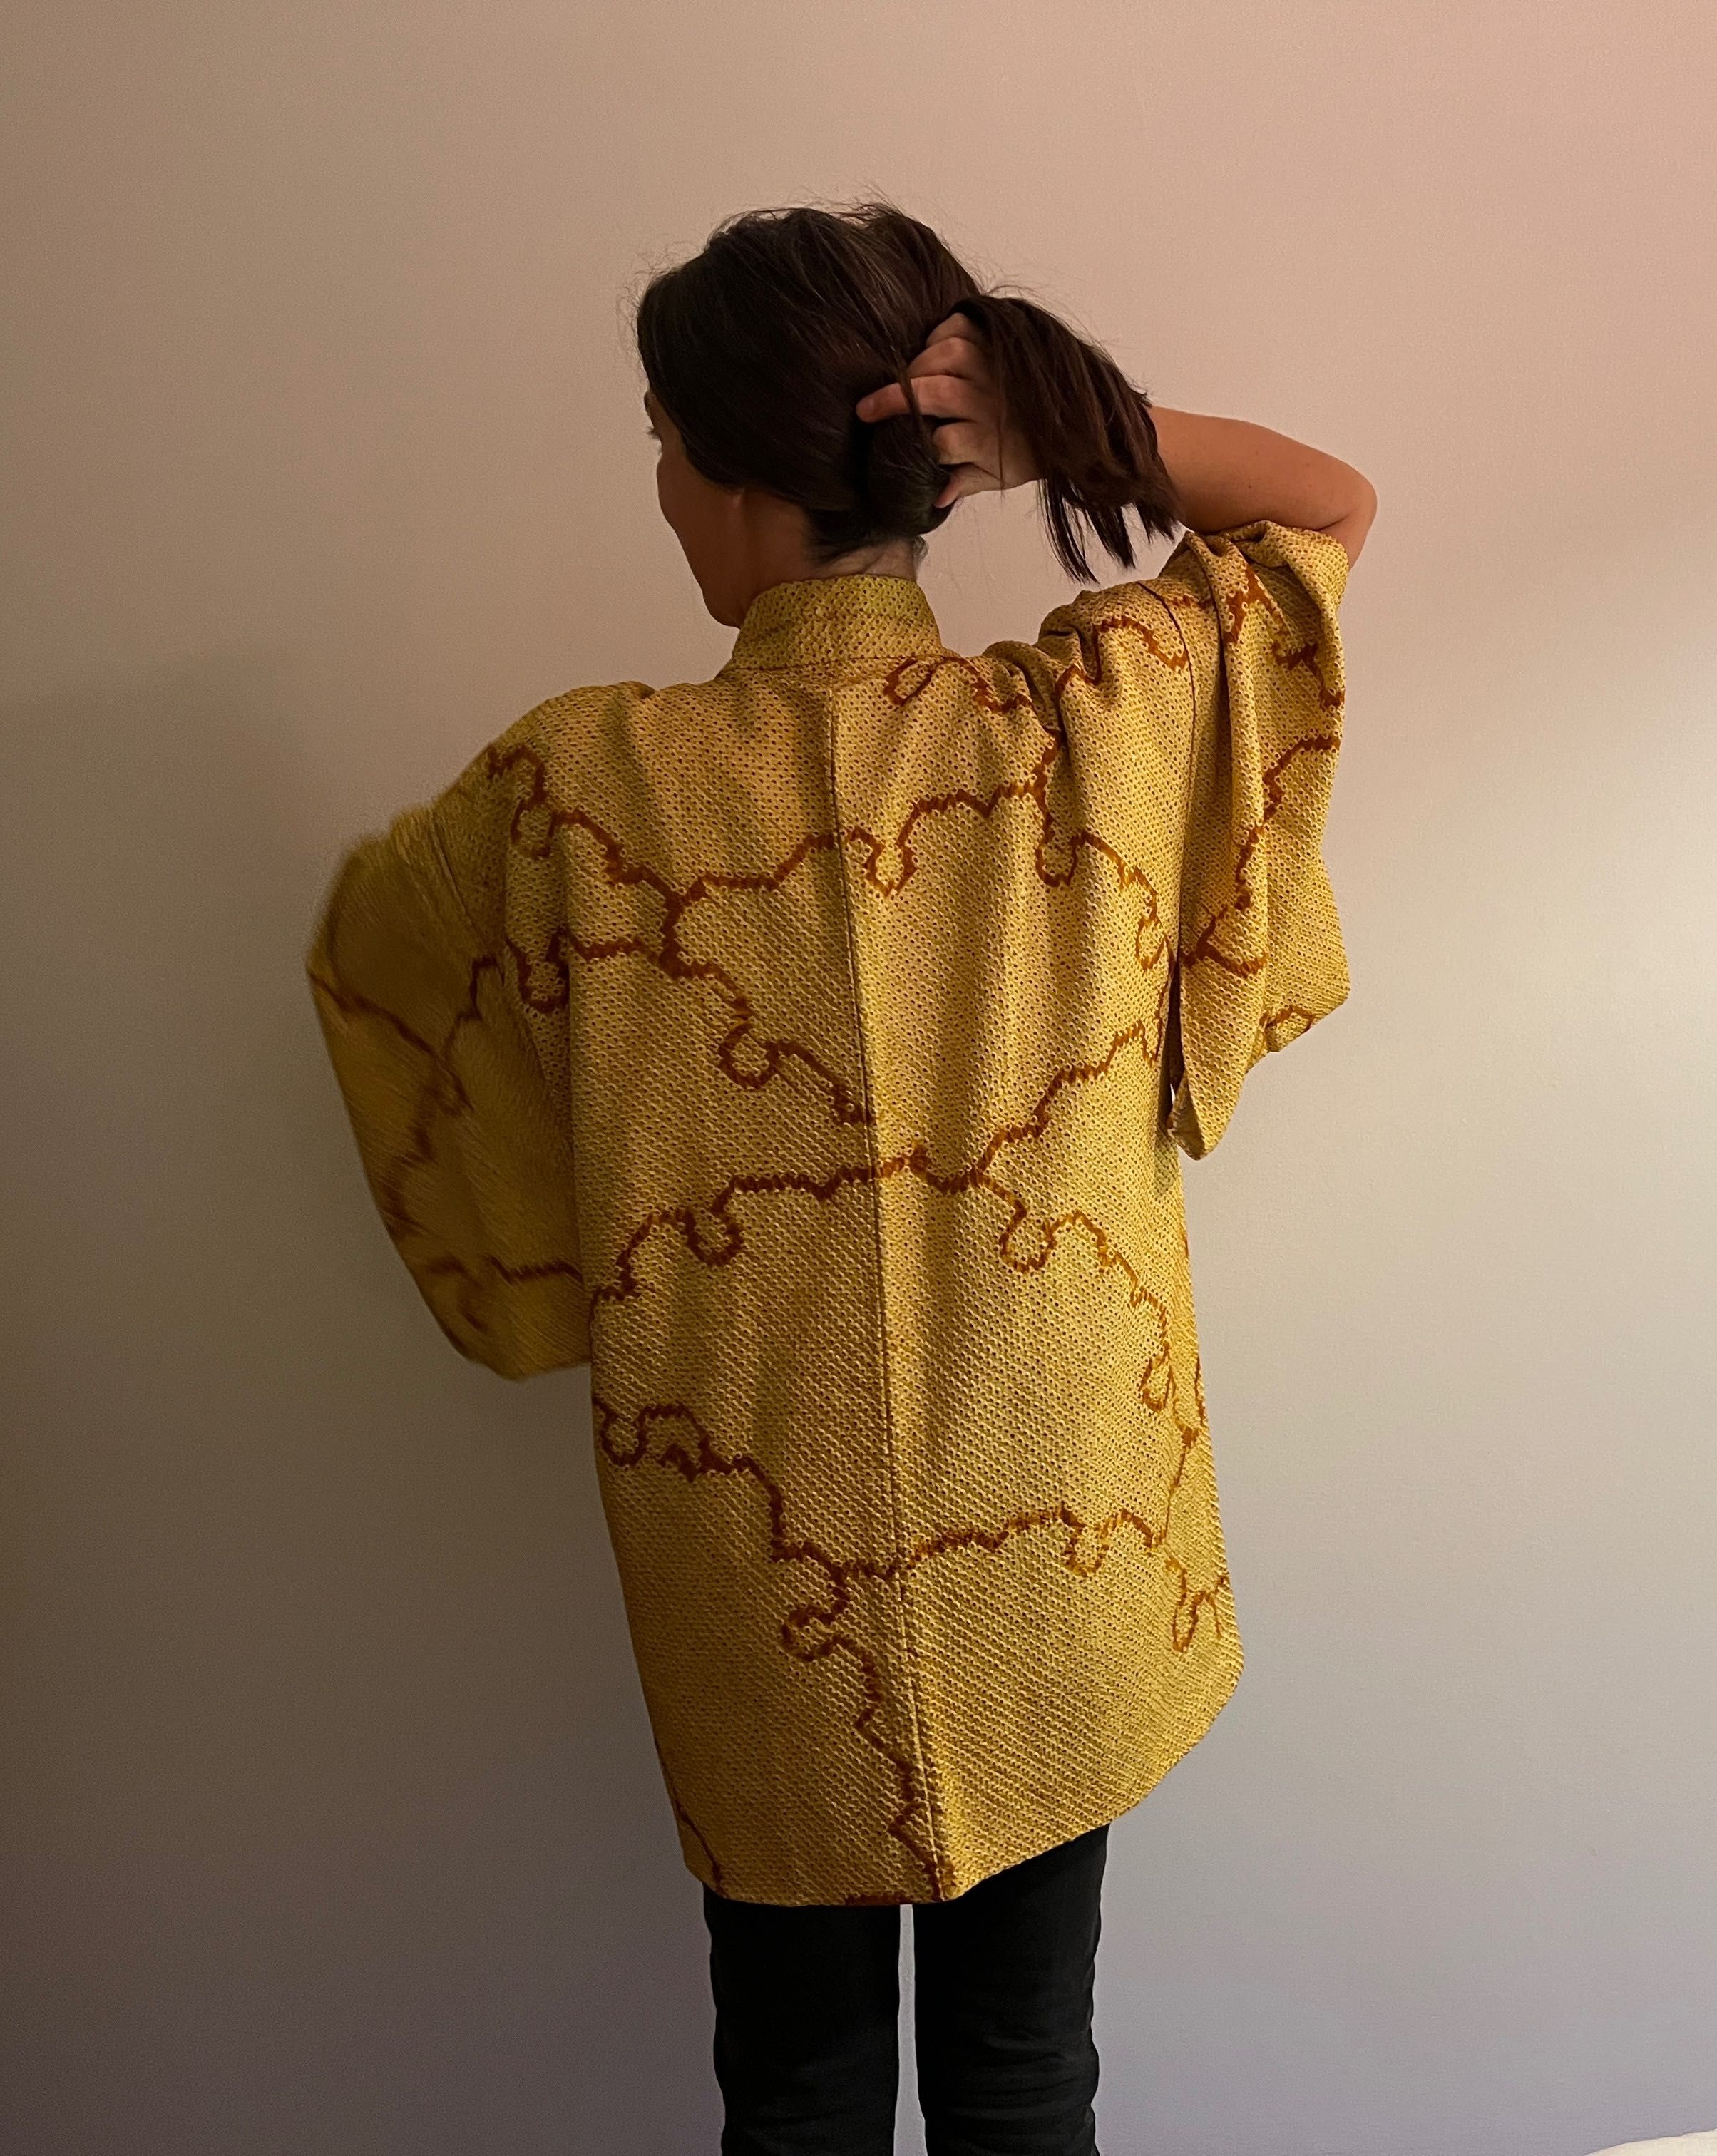 Kimono comprado no Japão